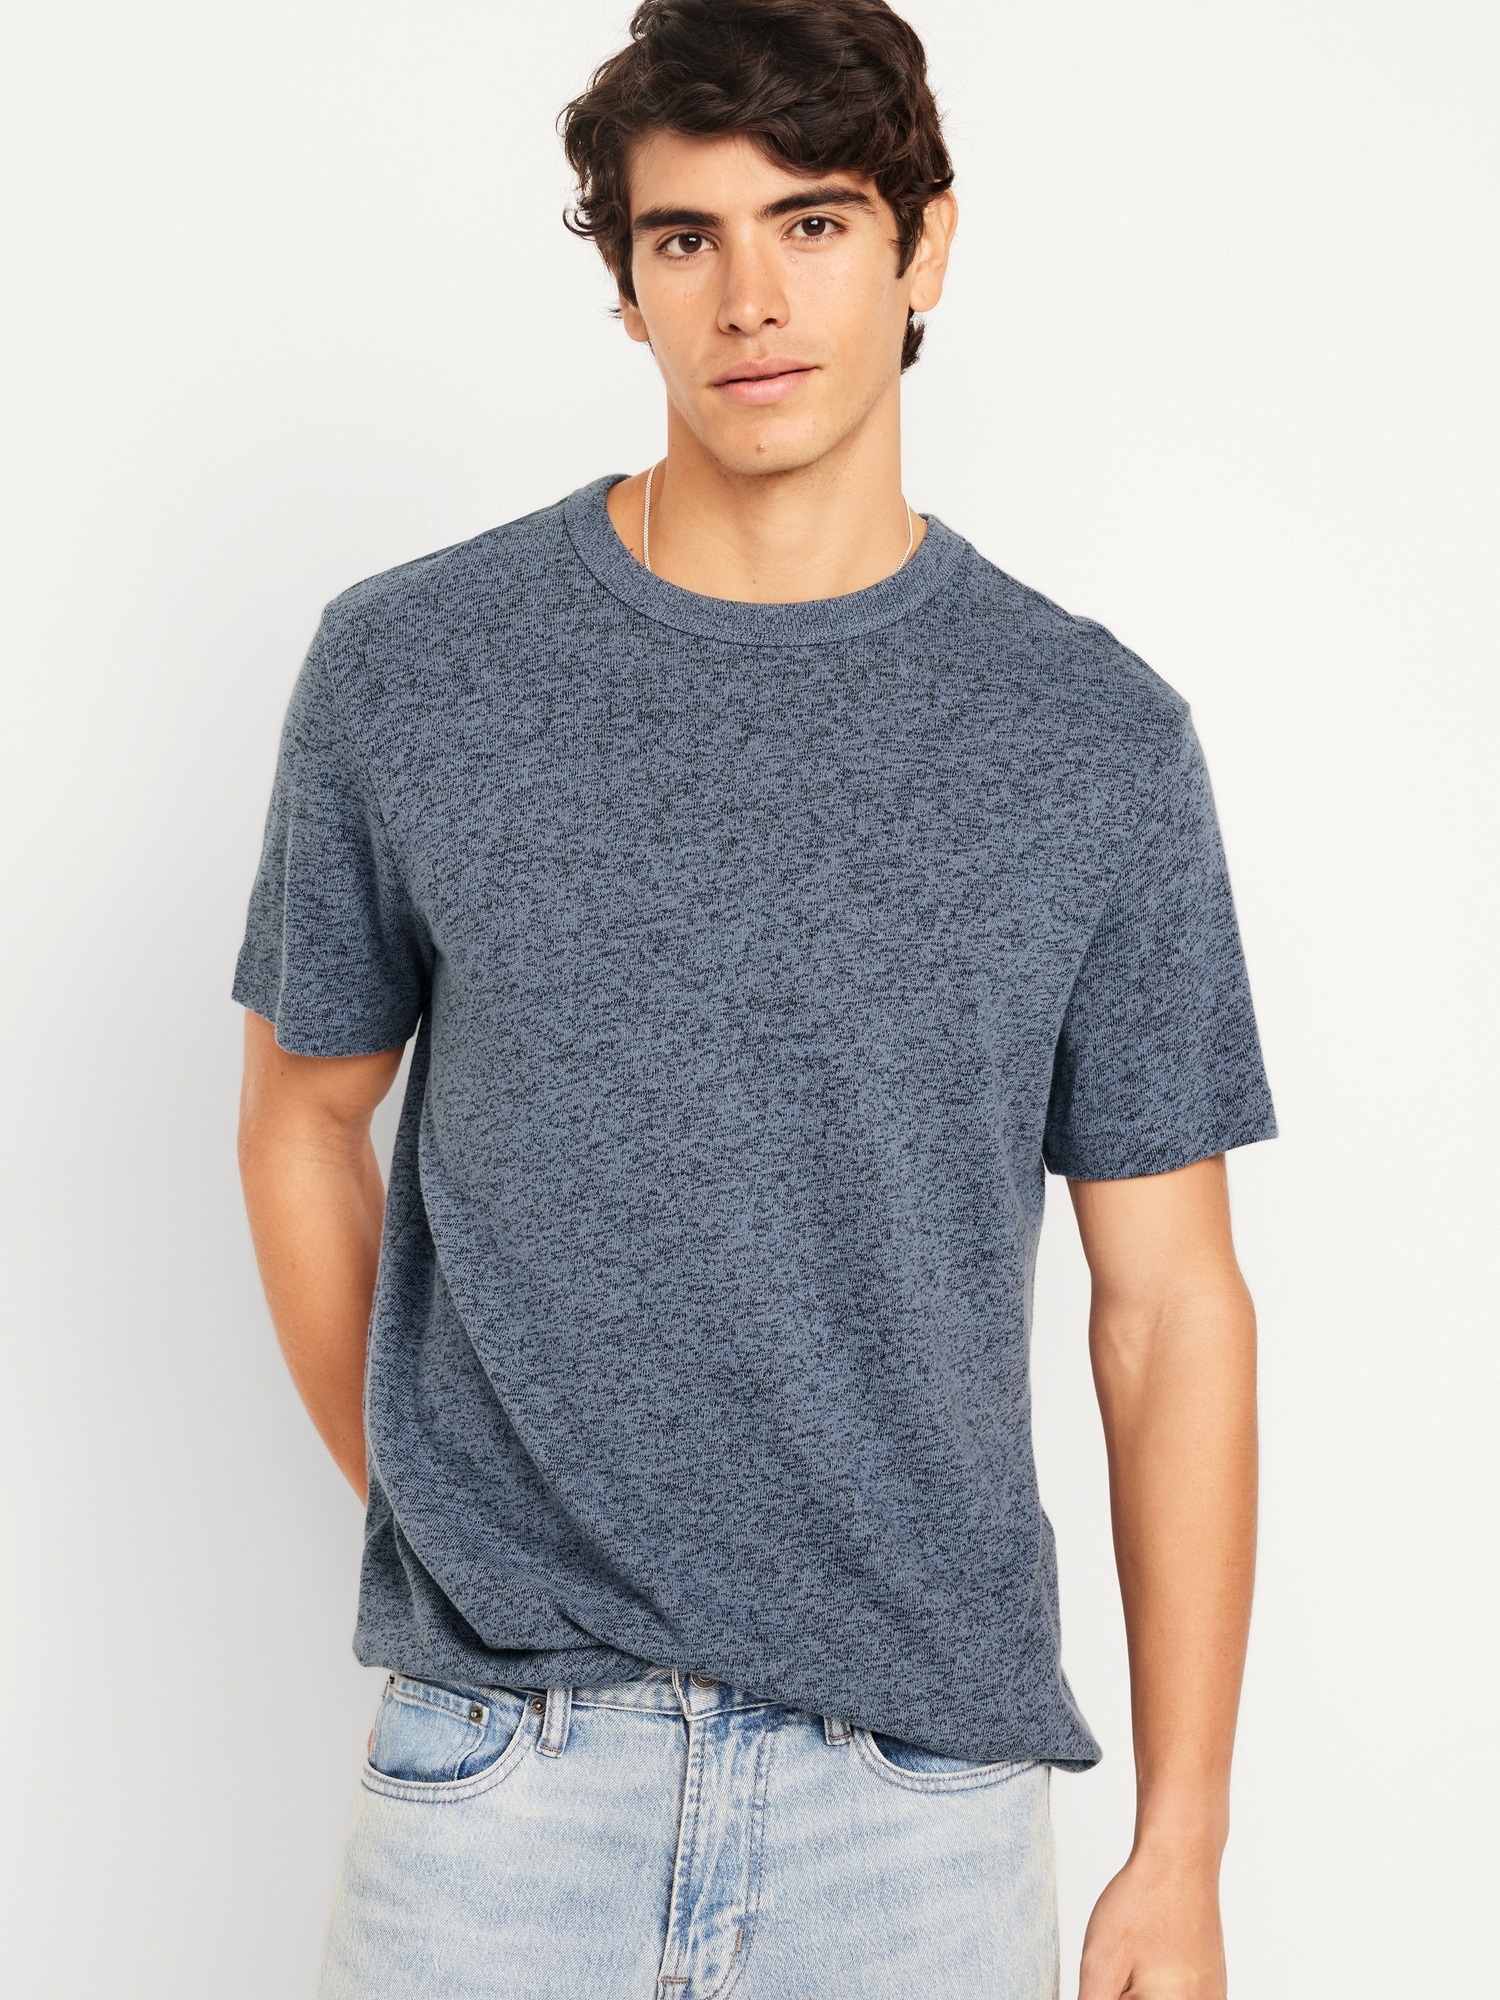 Jersey-Knit T-Shirt Hot Deal